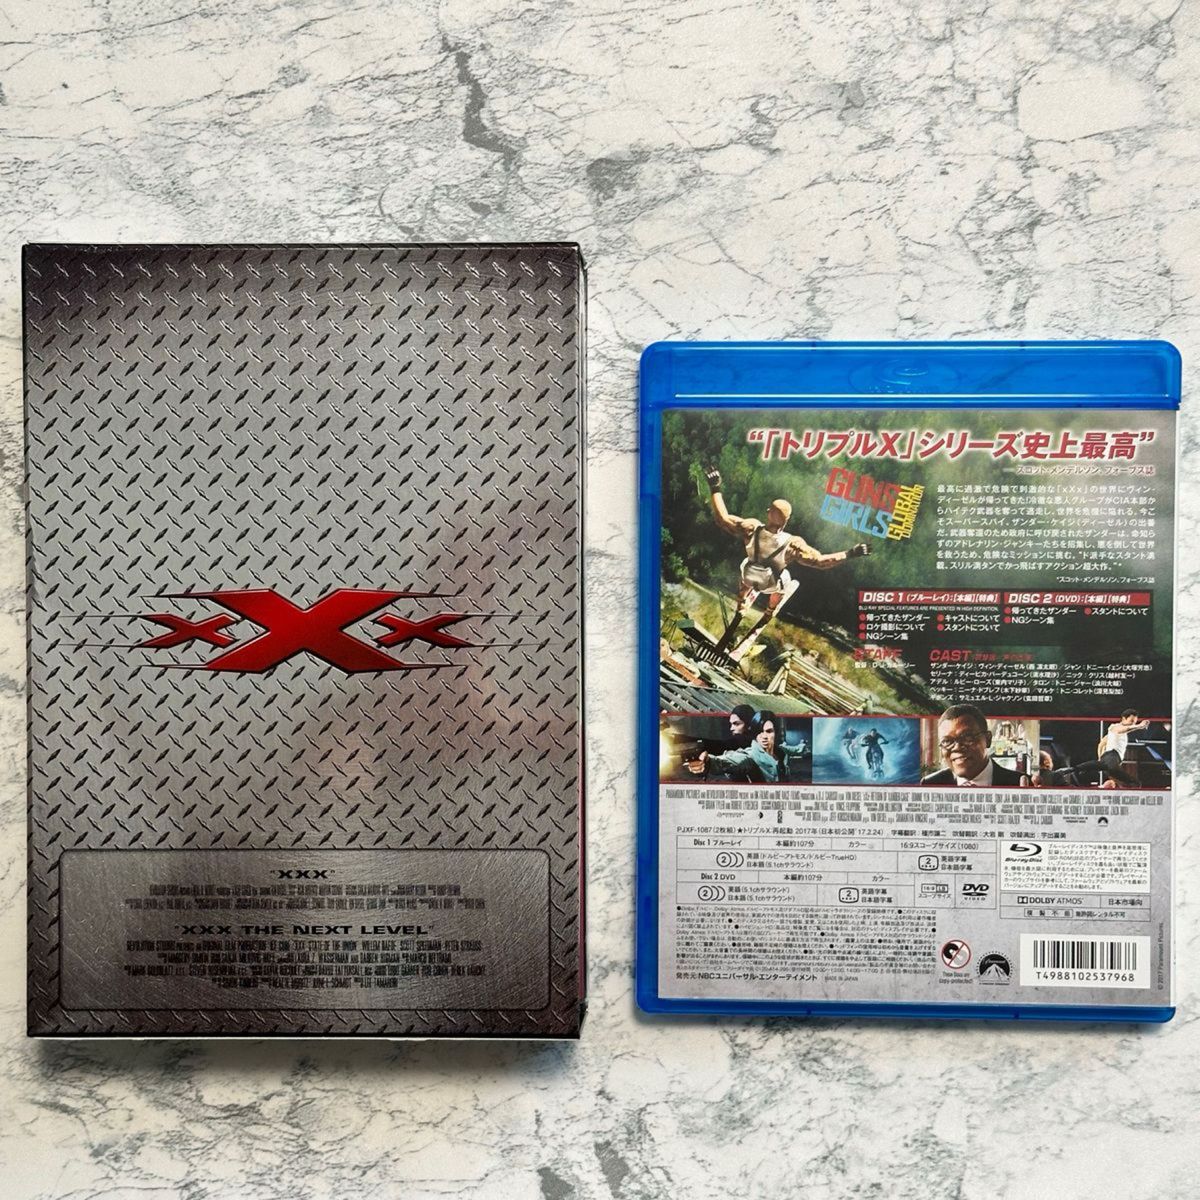 トリプルX  / トリプルX:再起動  DVD Blu-ray セル版 セット